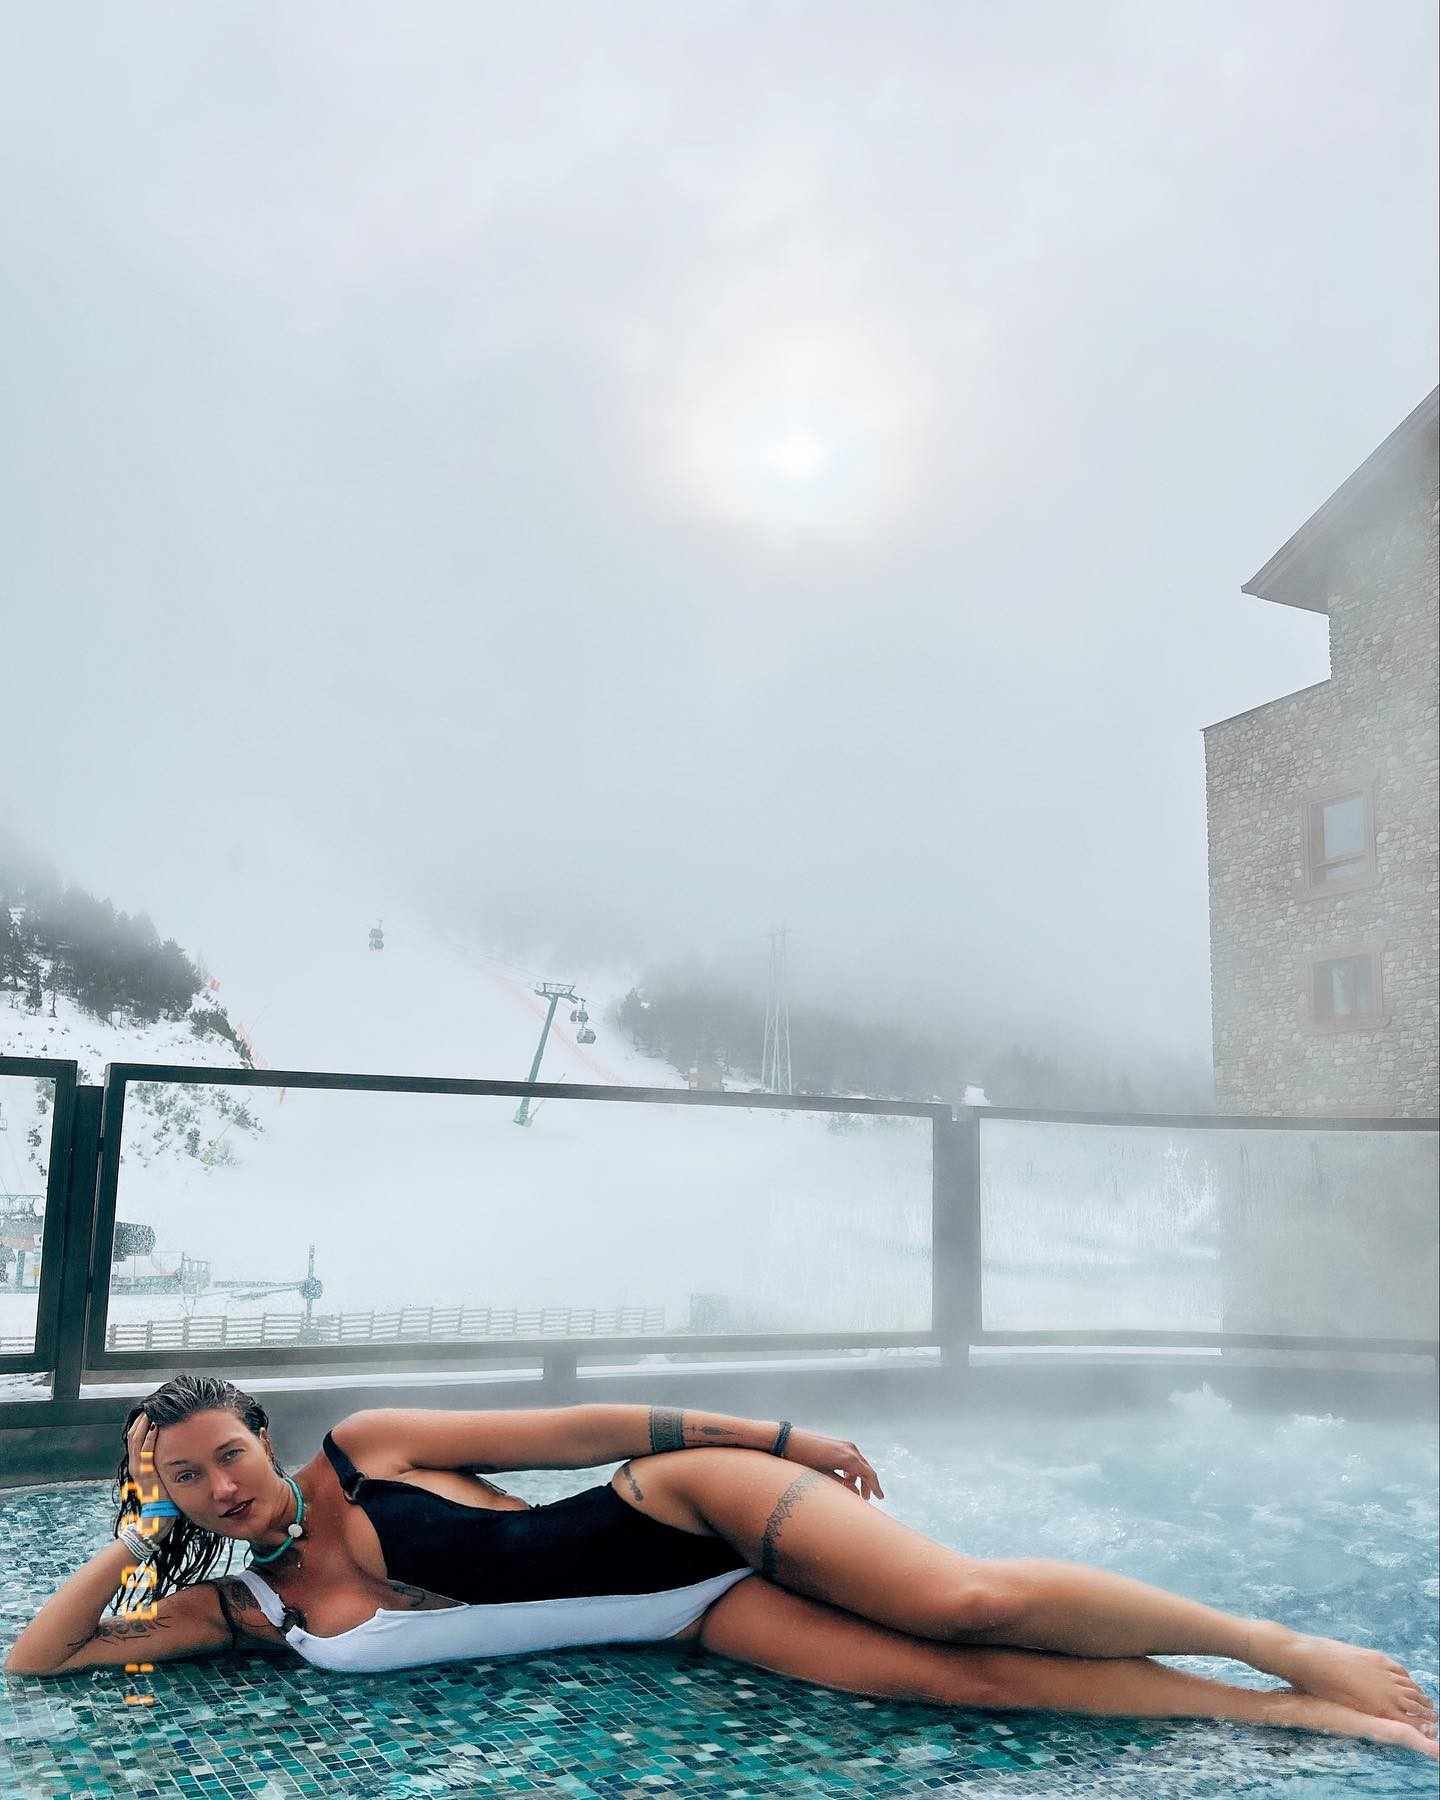 Gabriela Pugliesi posa de maiô em piscina na neve: 'Quente, mas frio' (Foto: Reprodução / Instagram)